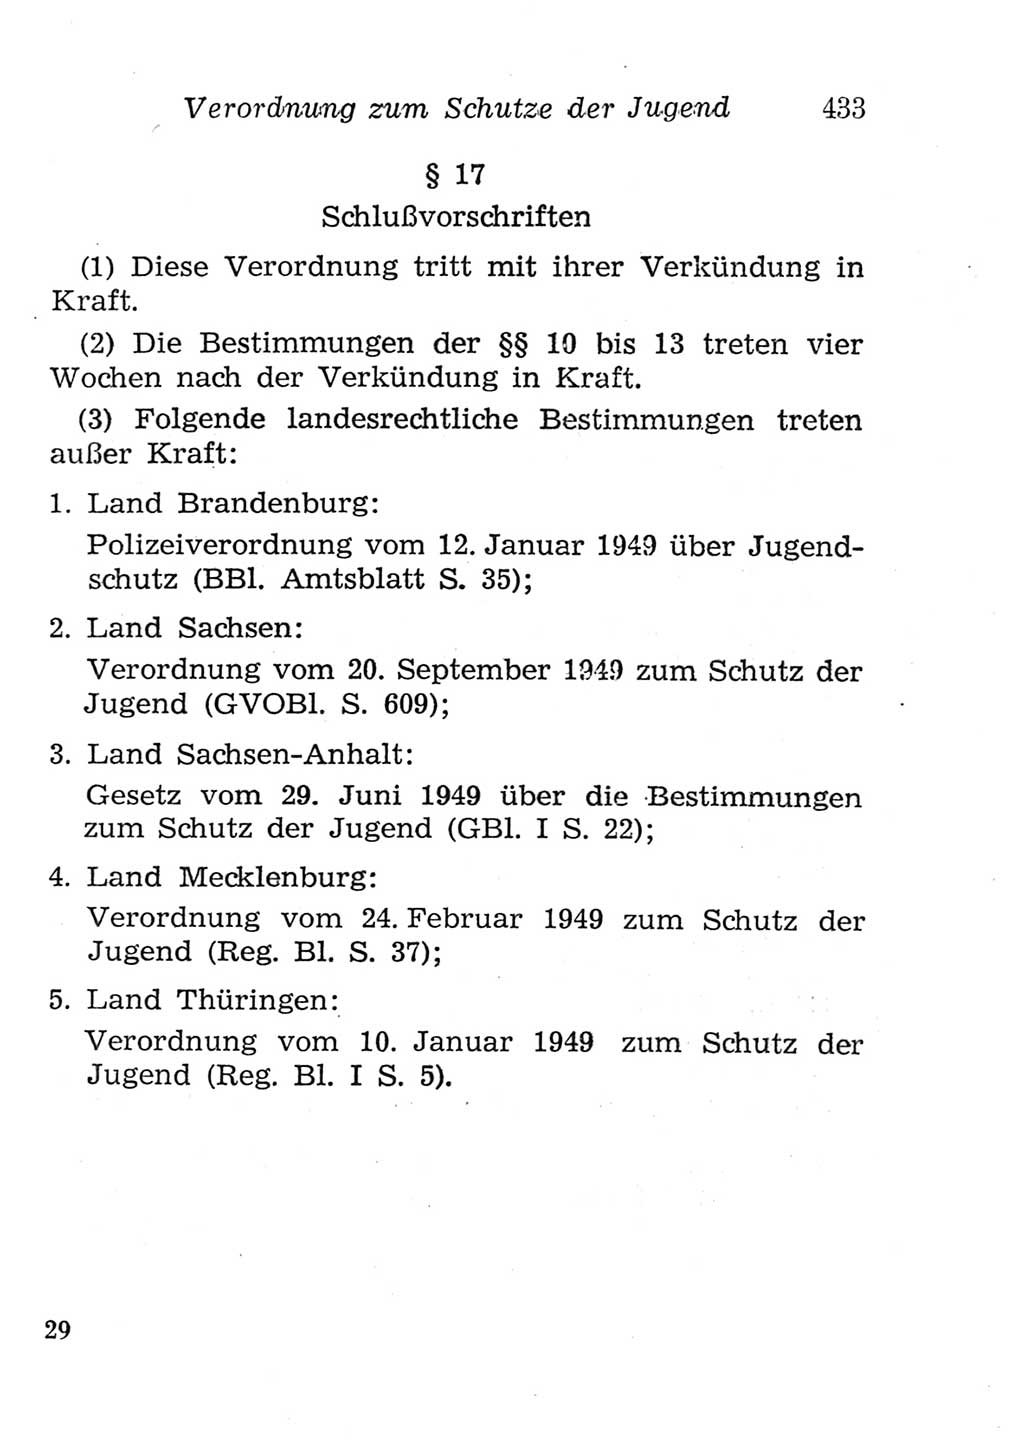 Strafgesetzbuch (StGB) und andere Strafgesetze [Deutsche Demokratische Republik (DDR)] 1957, Seite 433 (StGB Strafges. DDR 1957, S. 433)